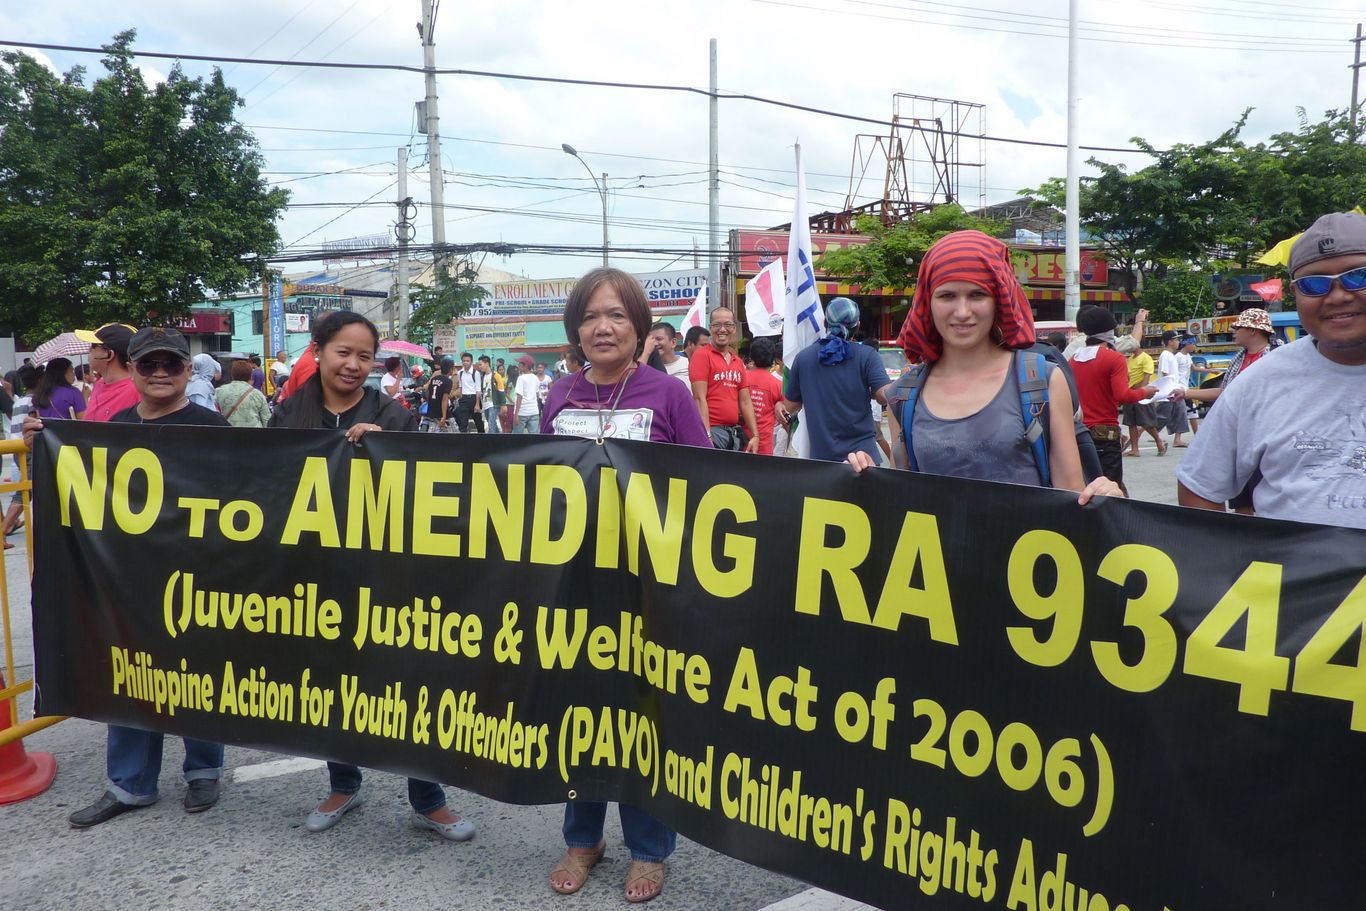 Fünf Personen stehen bei einer Demonstration hinter einem Transparent "No to amending Juvenile Justice & Welfare Act of 2006"